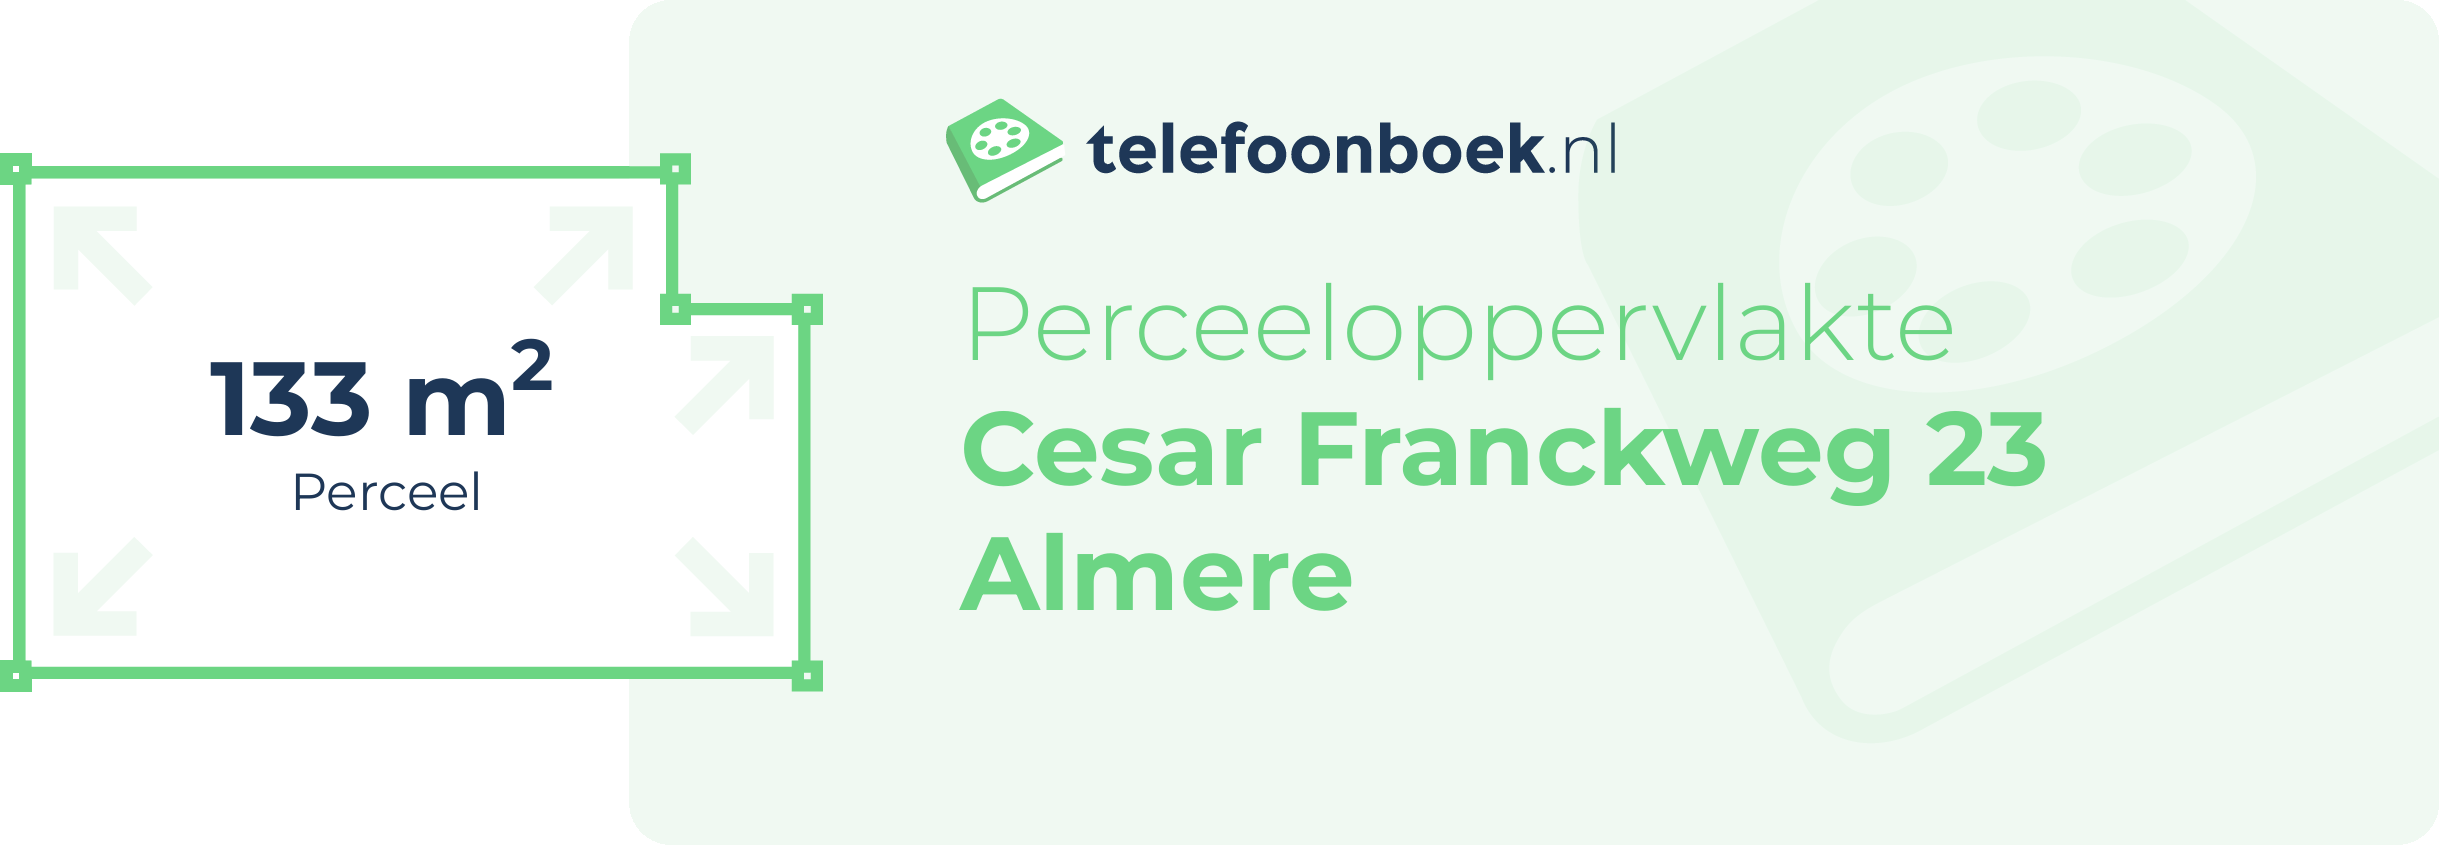 Perceeloppervlakte Cesar Franckweg 23 Almere